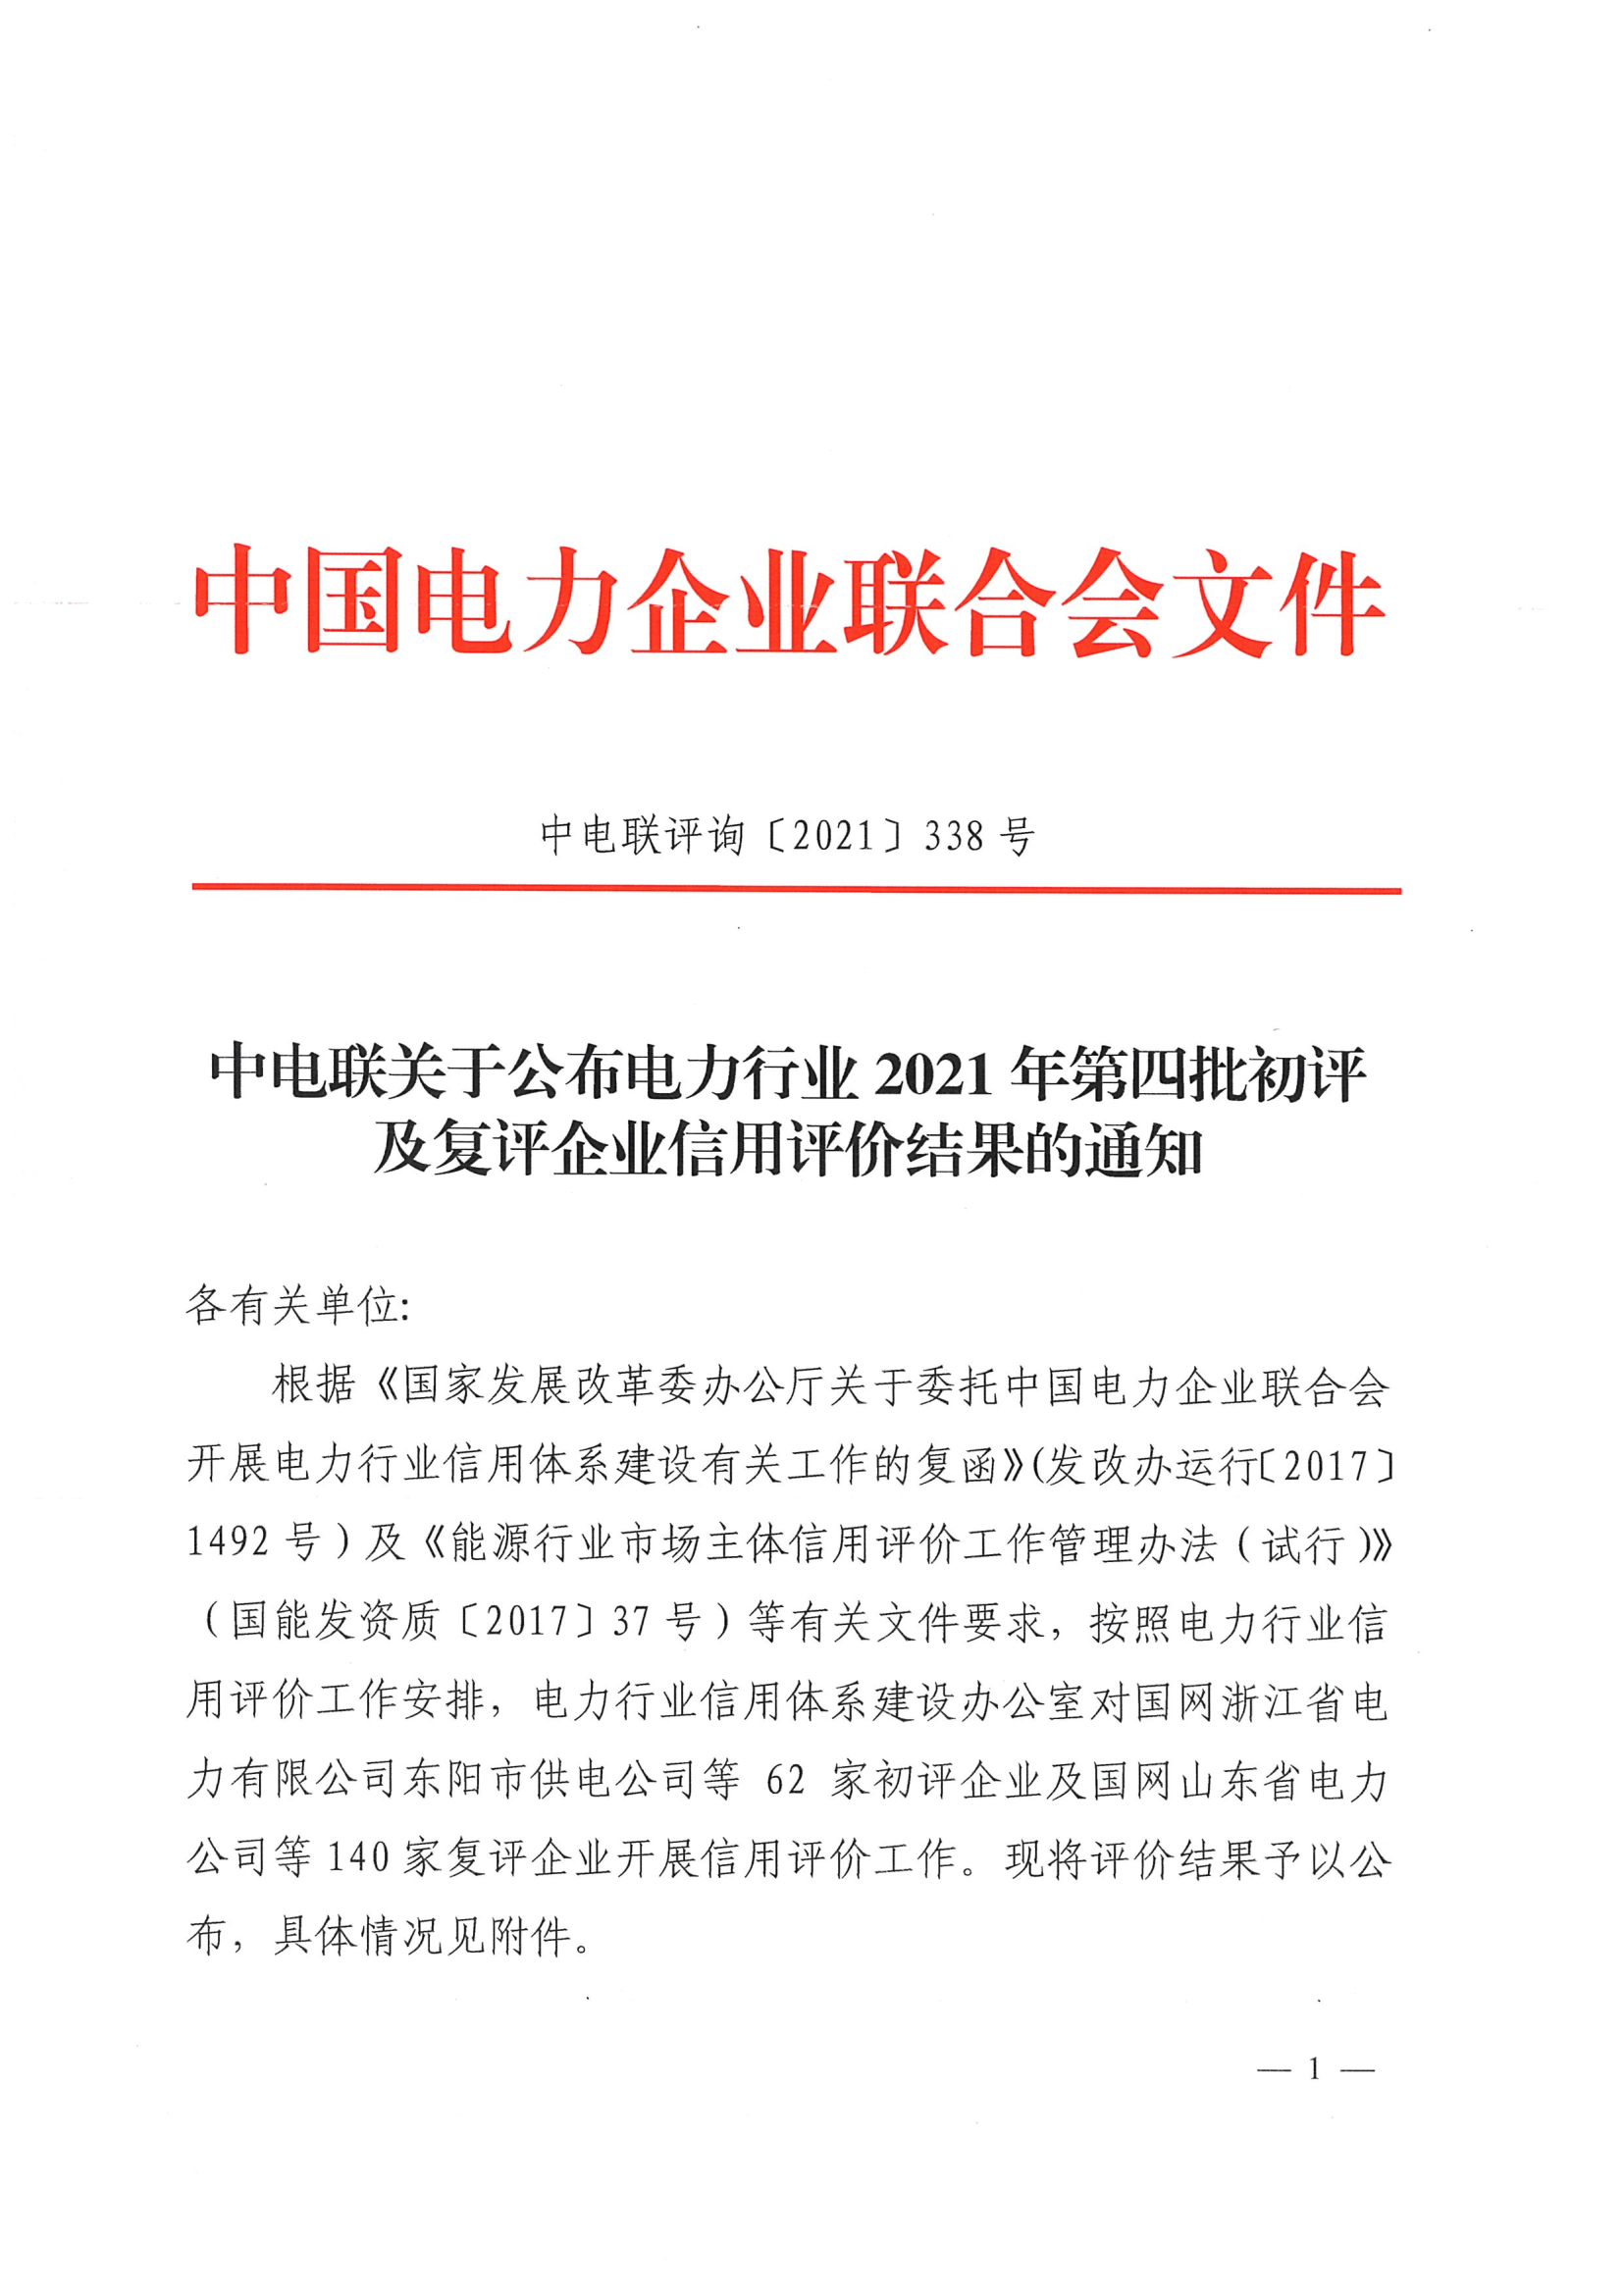 中电联关于公布电力行业2021年第四批初评及复评企业信用评价结果的通知_1.png